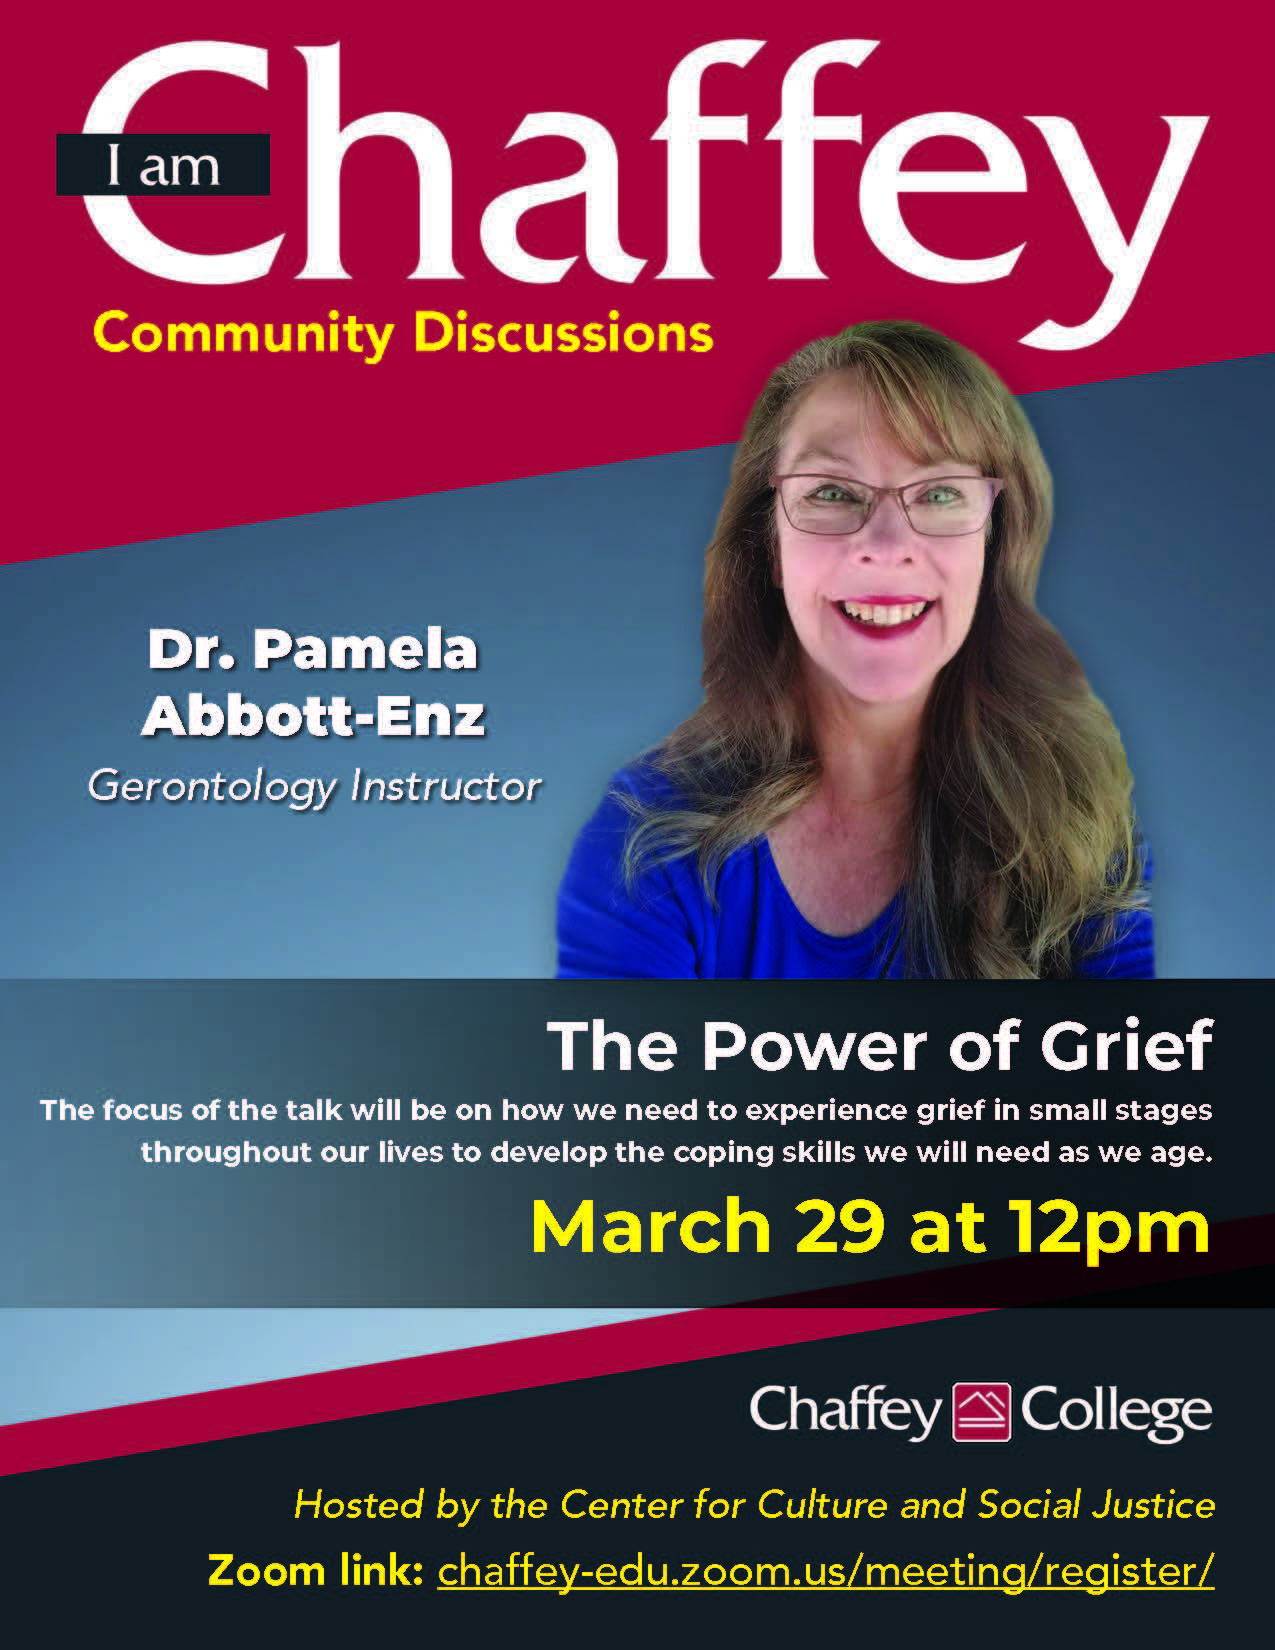 I Am Chaffey: Dr. Pamela Abbott-Enz